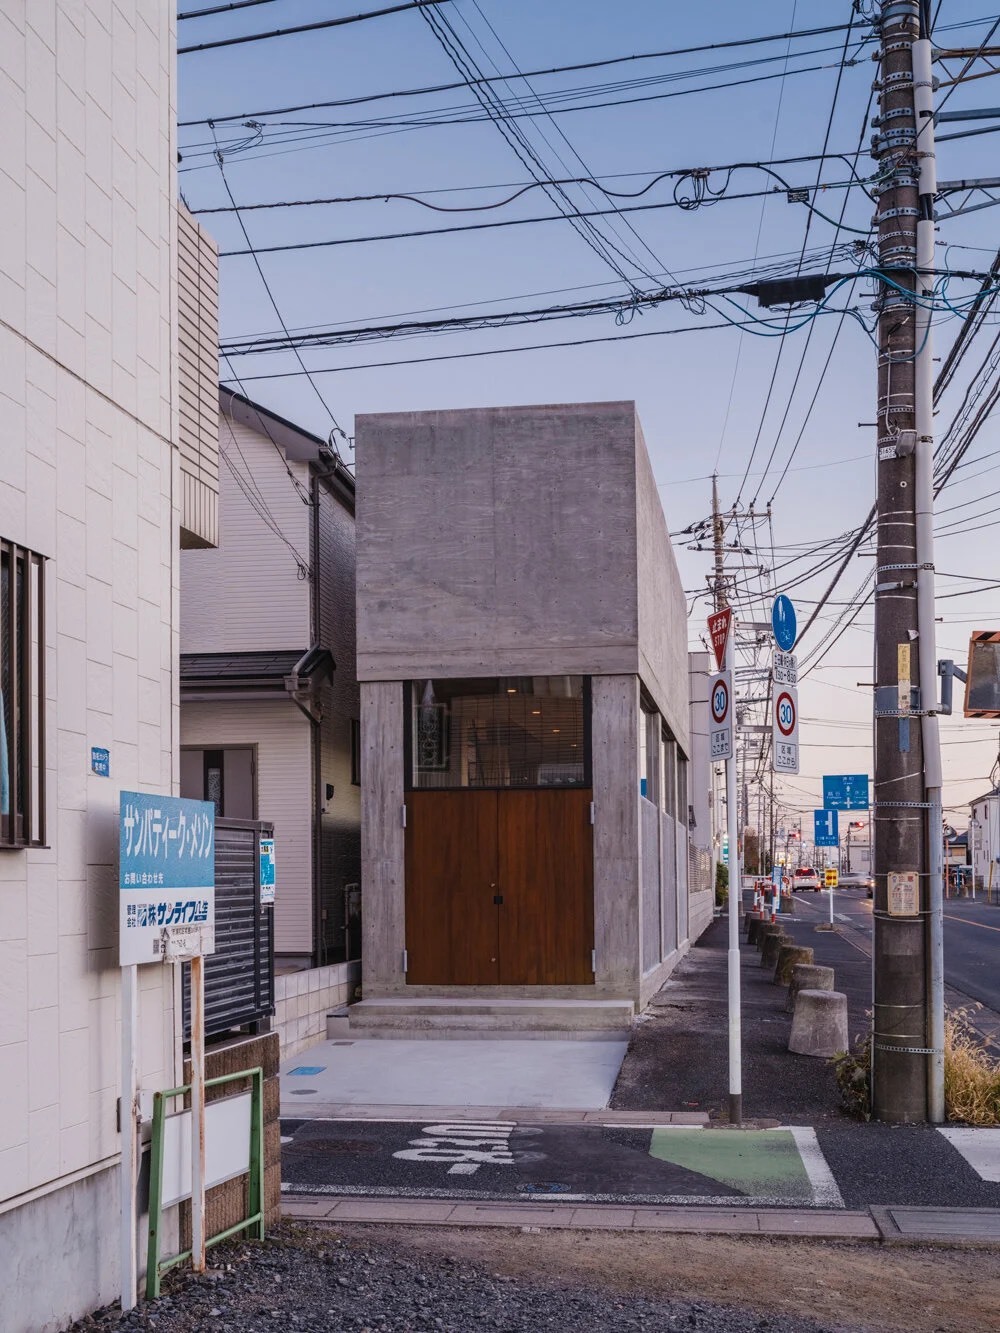 خانه جالب ژاپنی که فقط 2.9 متر عرض دارد! (+تصاویر)